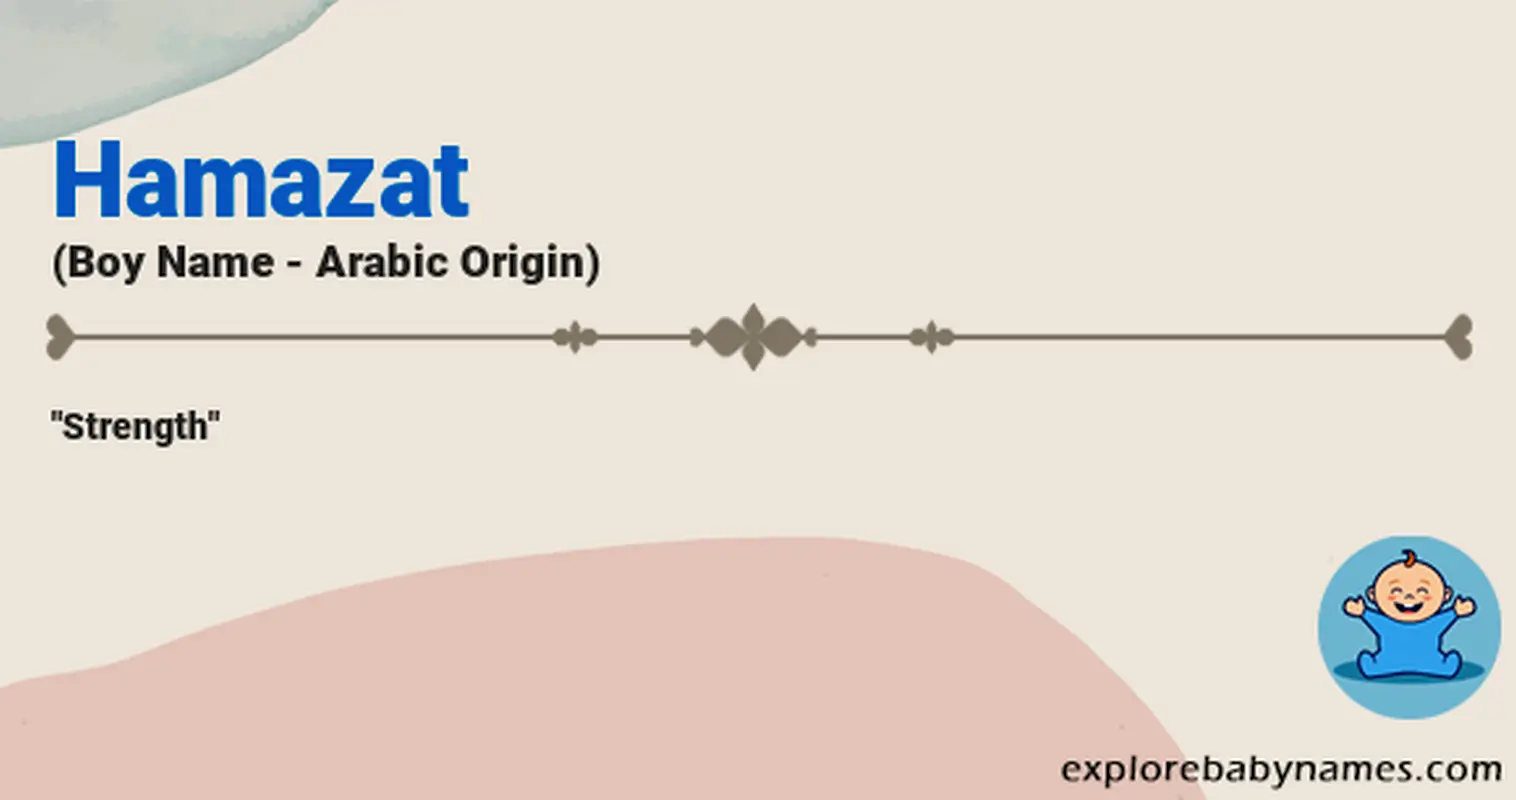 Meaning of Hamazat